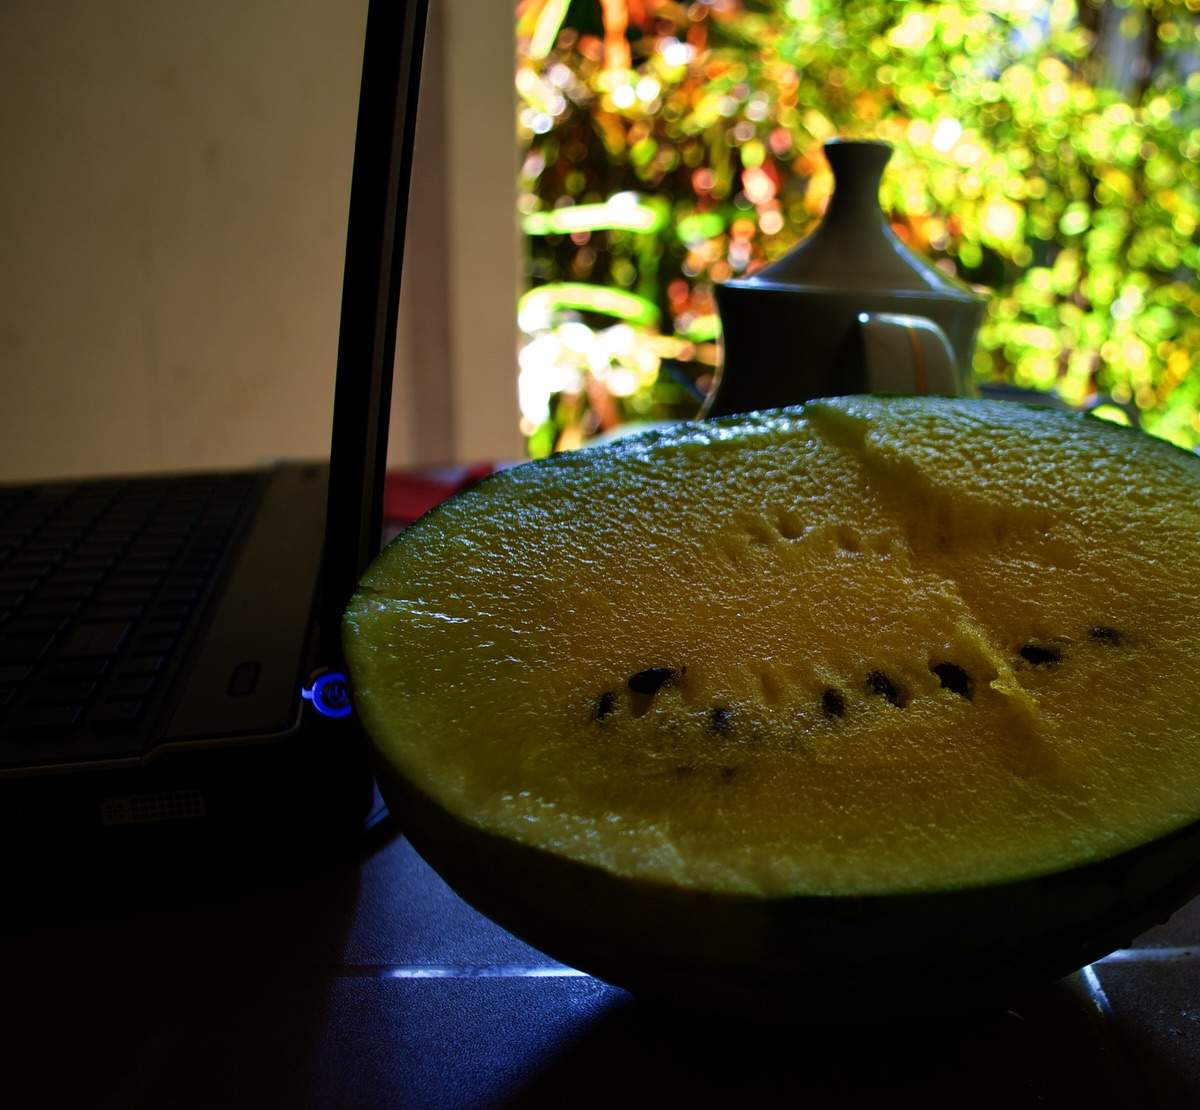 polonnaruwa-watermelon.jpg